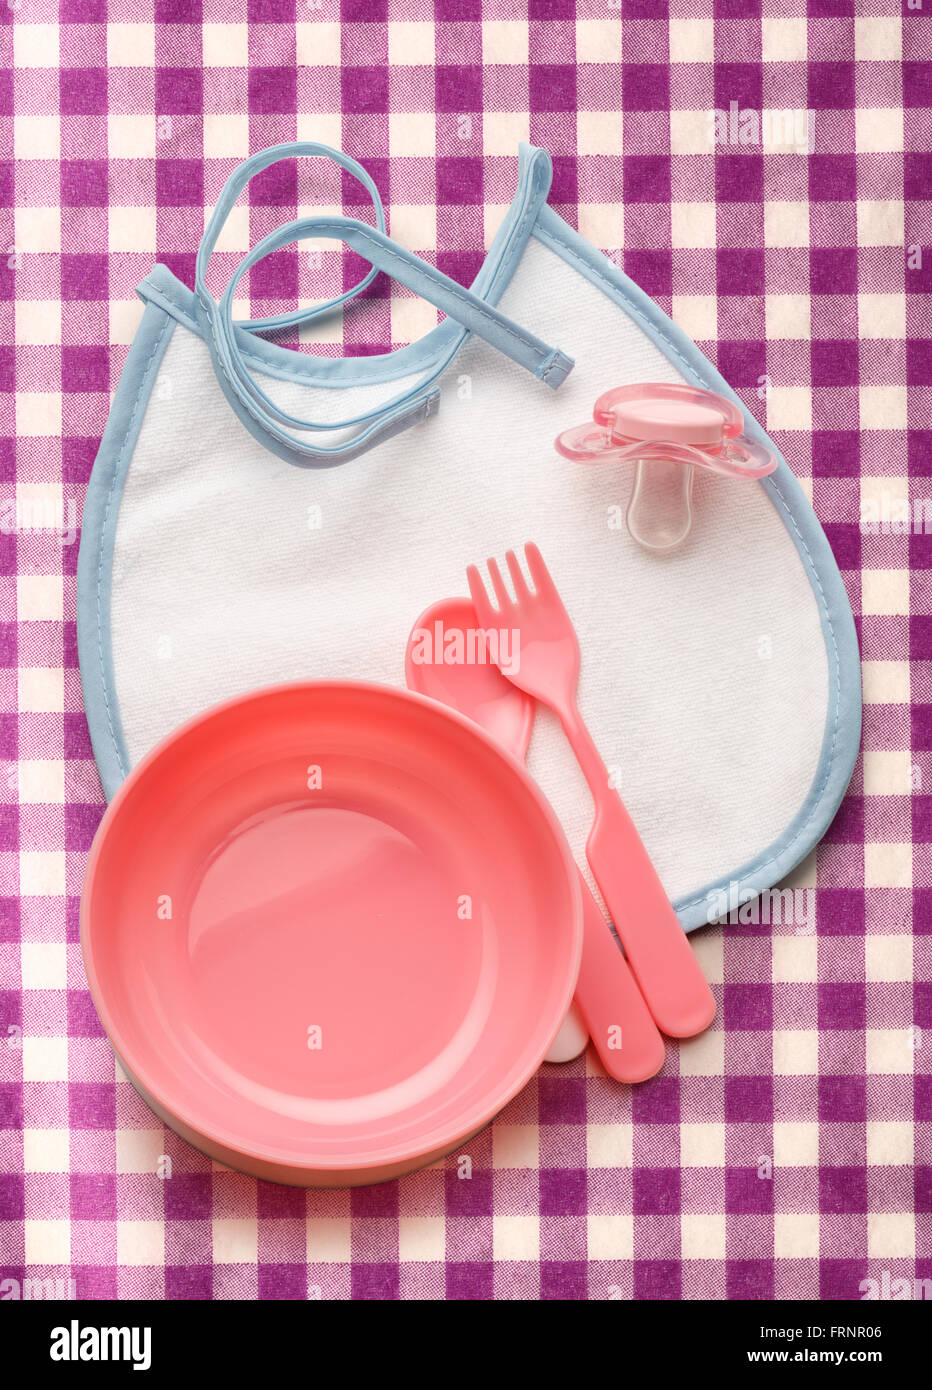 Ciotola del bambino, cucchiaio e forchetta con fantoccio e bavaglini Foto Stock